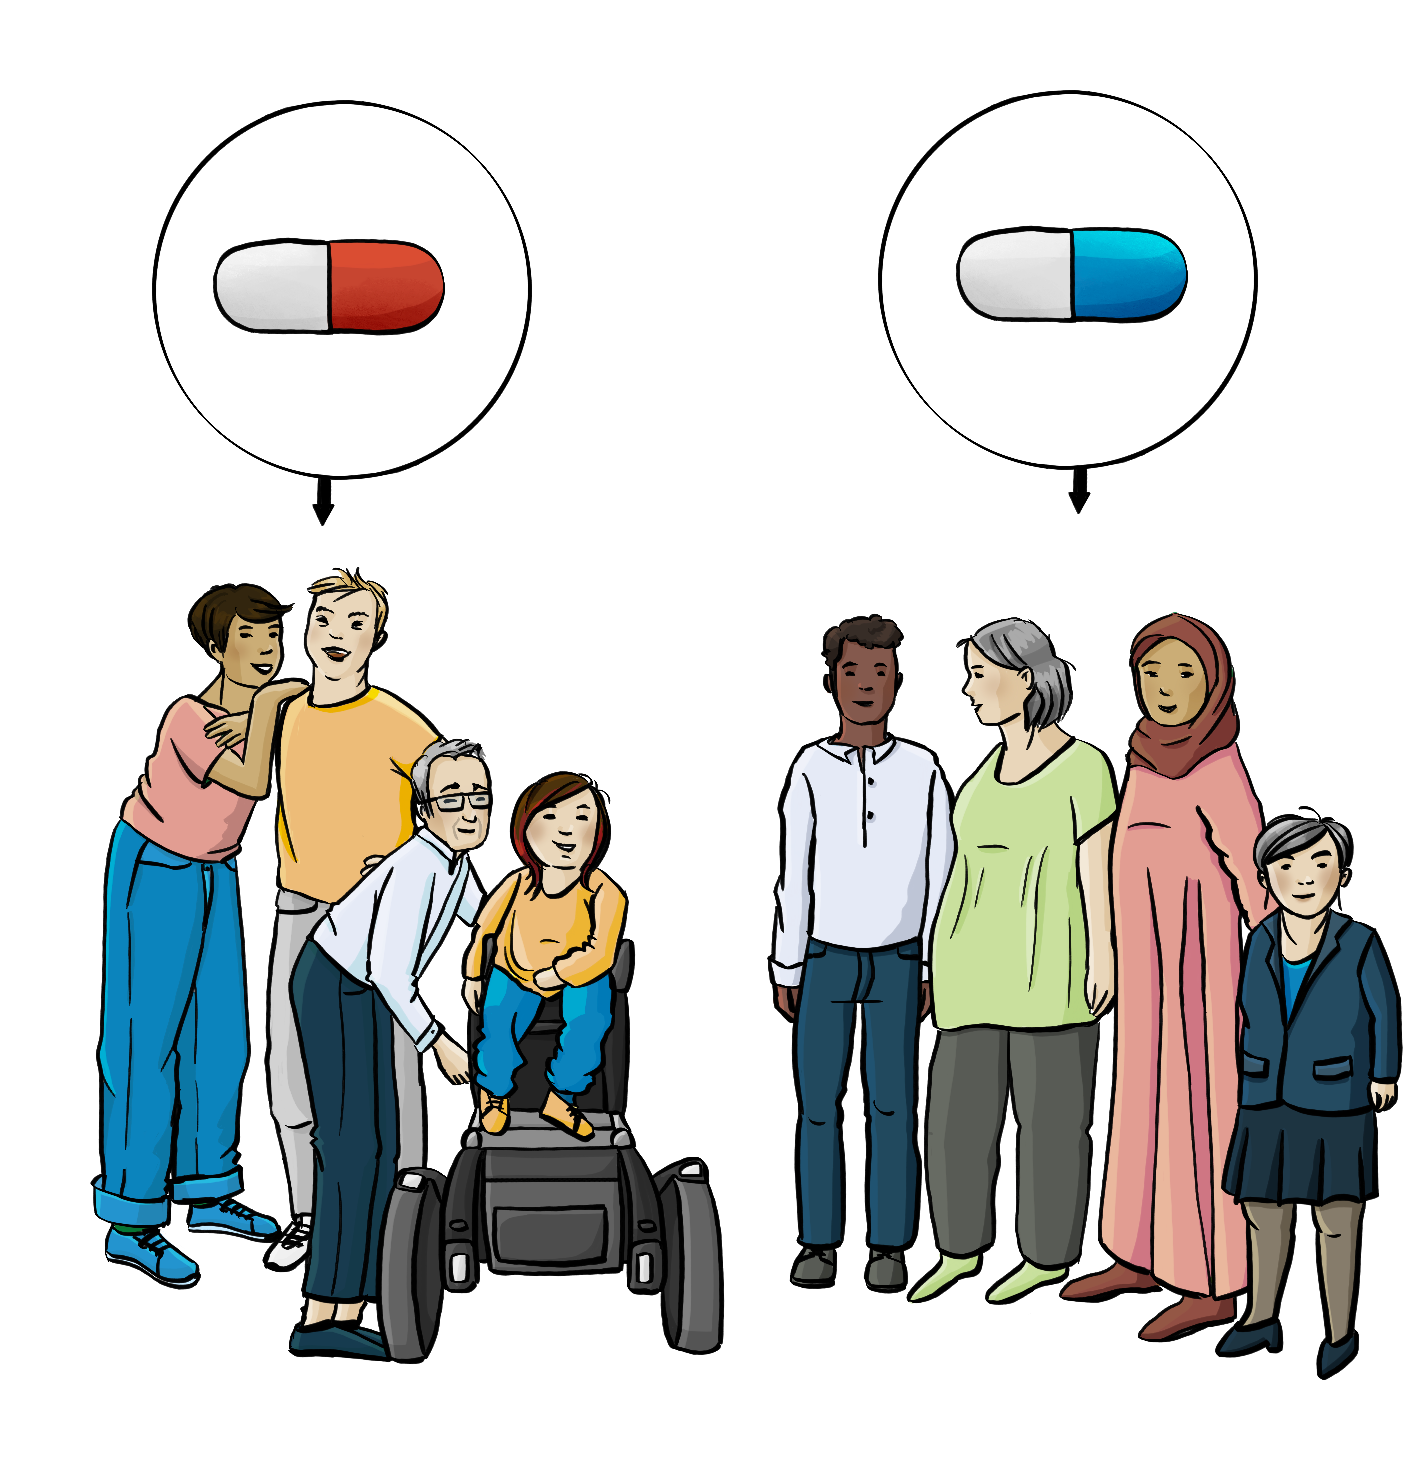 Zwei Gruppen verschieden alter Menschen mit verschiedenen Hautfarben stehen nebeneinander. Es sind Menschen mit und ohne Behinderung. Über der einen Gruppe ist ein Kreis mit einer roten Tablette. Über der anderen Gruppe ist ein Kreis mit einer blauen Tablette. Von den Kreisen zeigen Pfeile auf die Menschengruppen. 